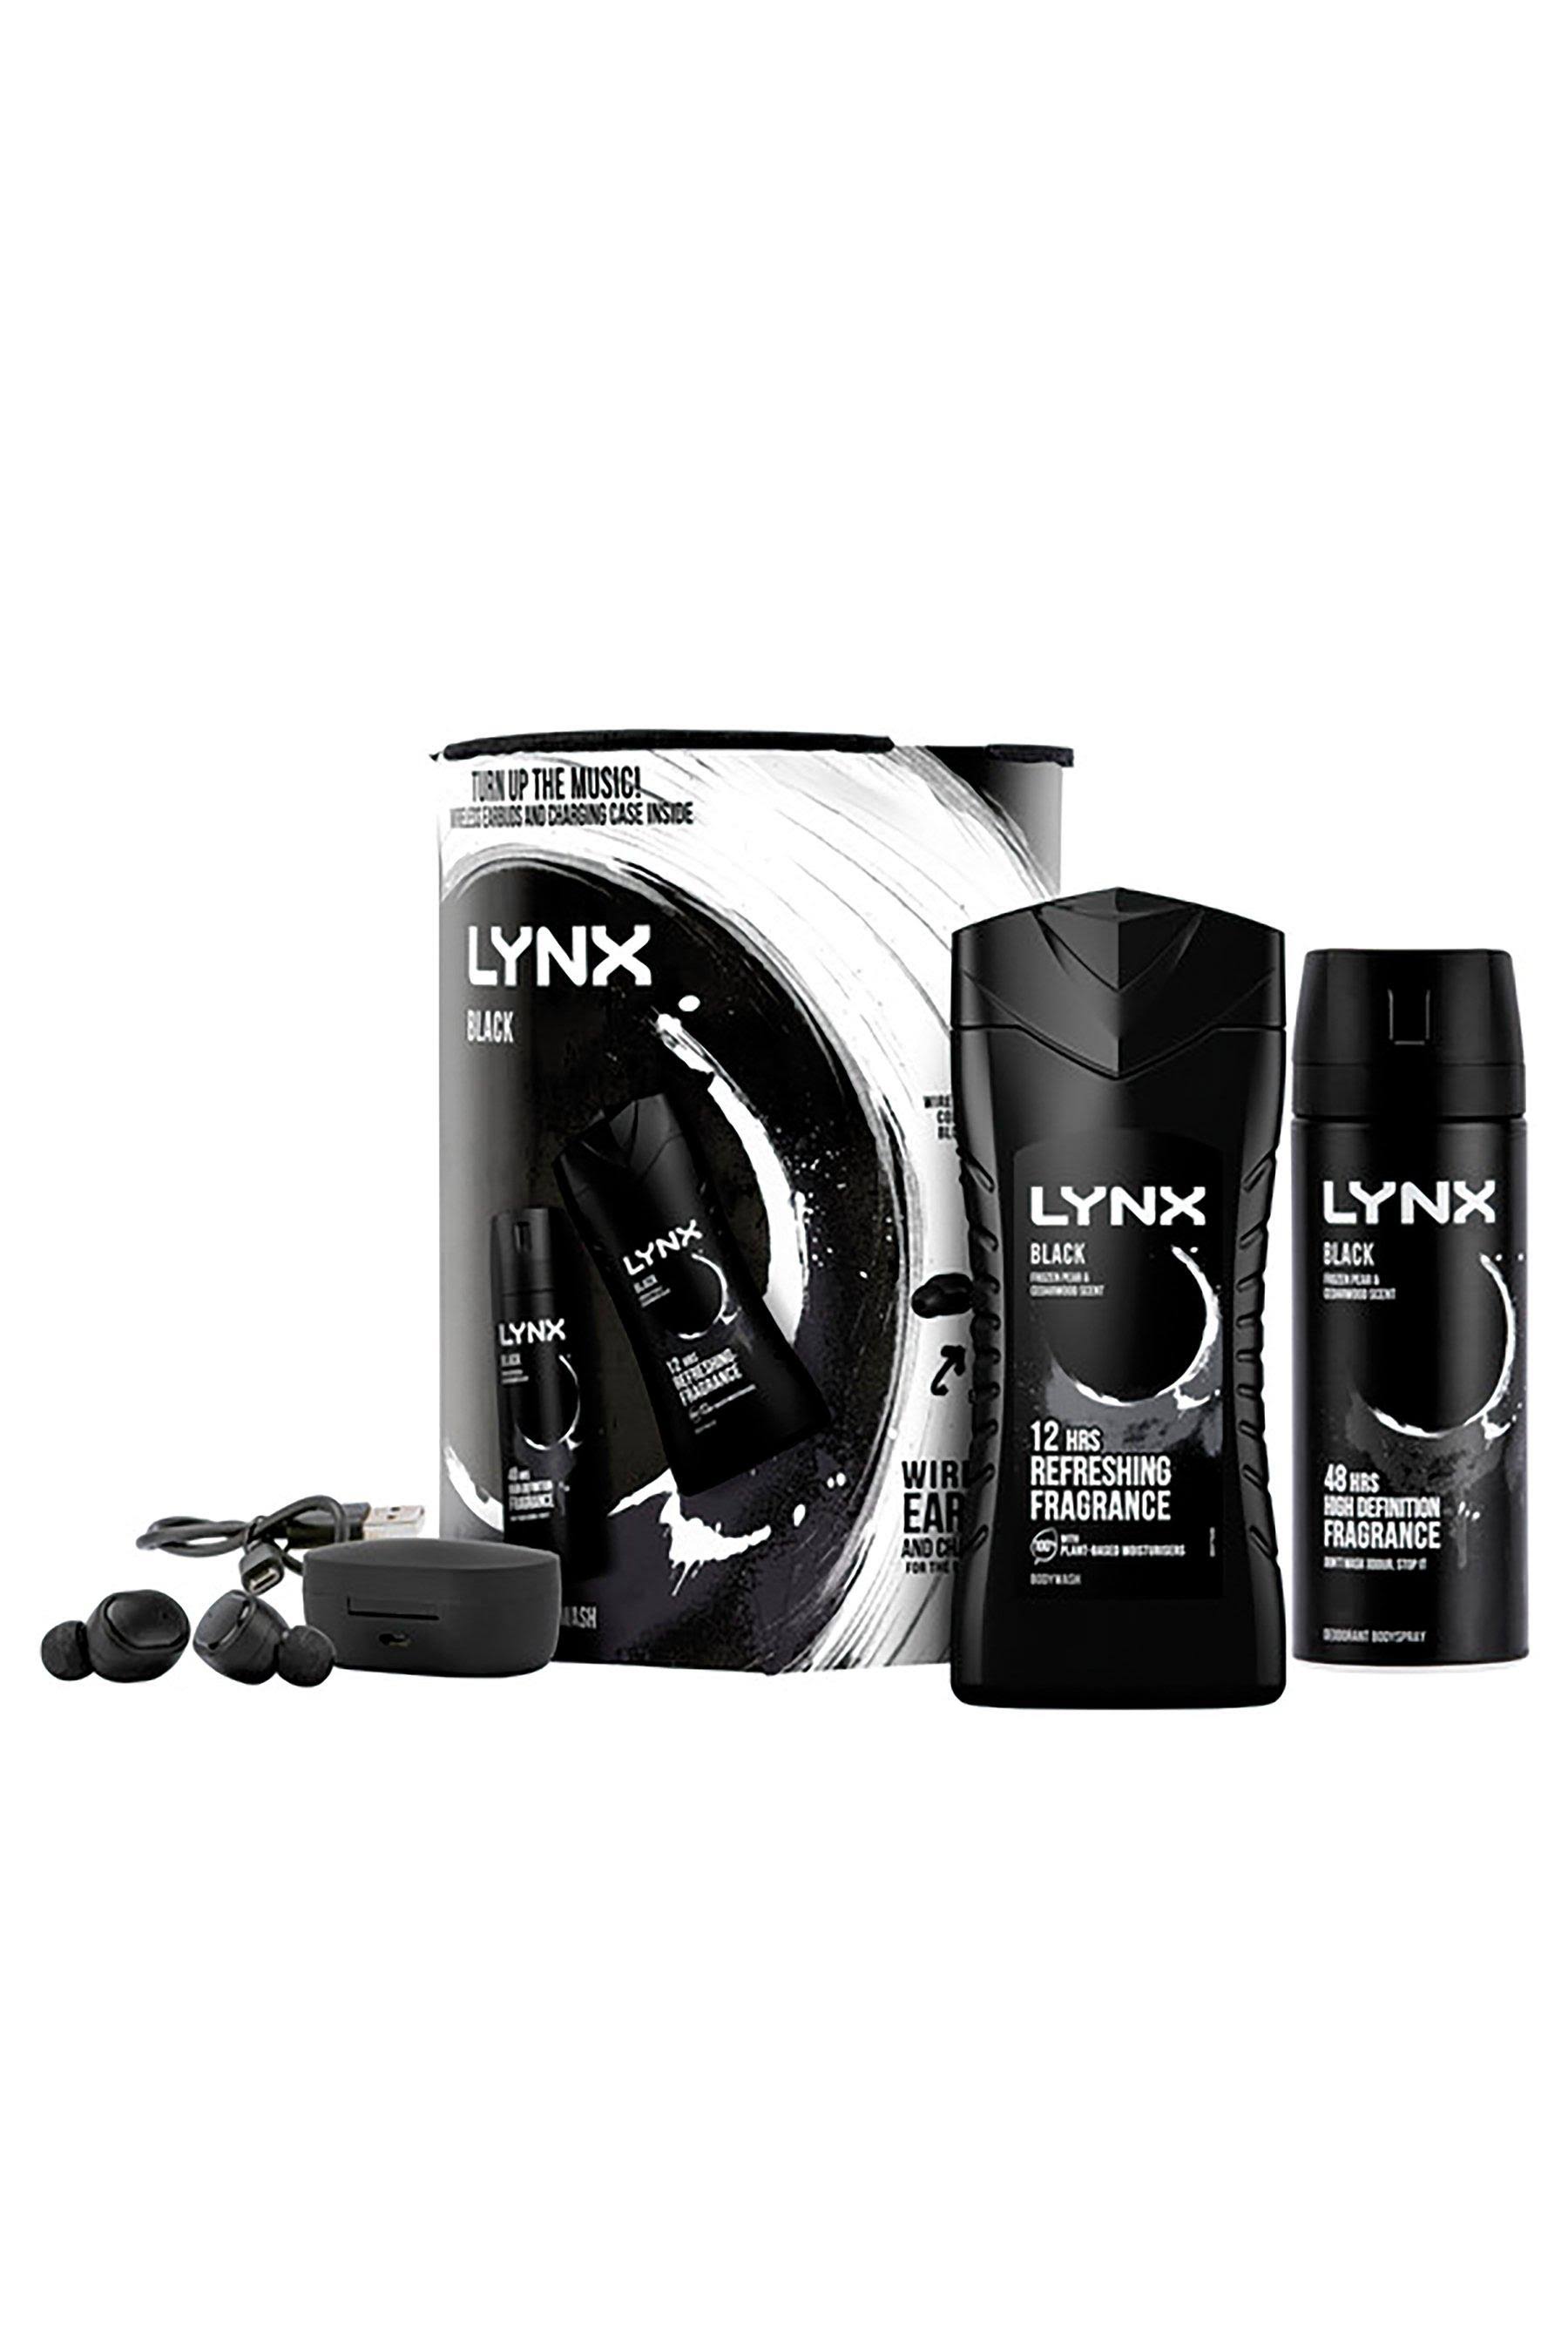 Lynx Black Duo & Wireless Ear Buds Giftset by dpharmacy